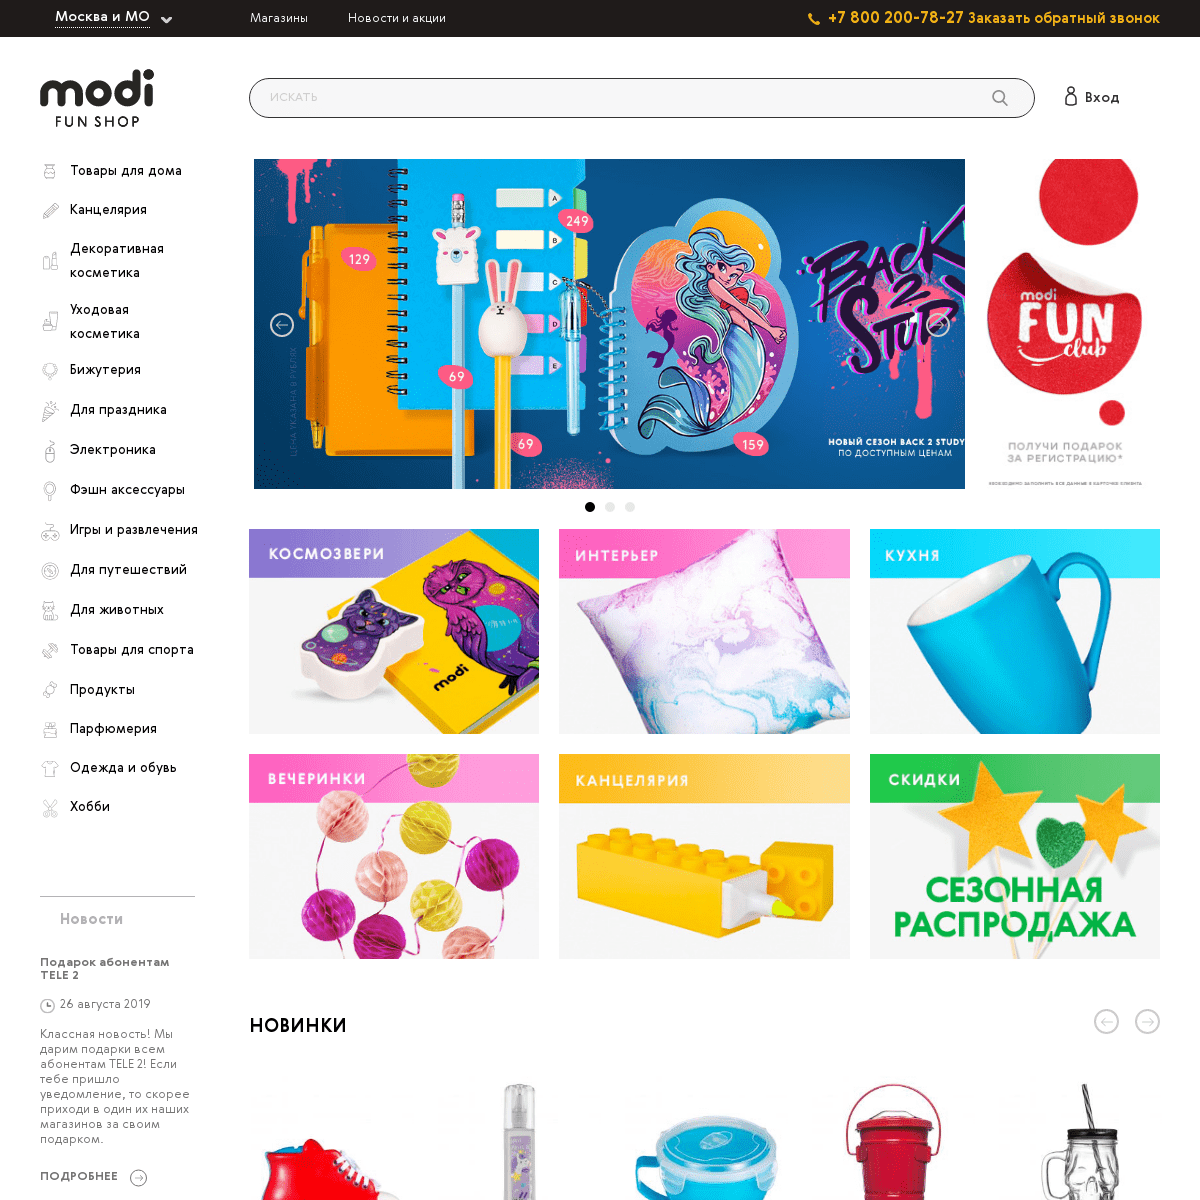 MODI – интернет магазин интересных товаров для дома по доступным ценам